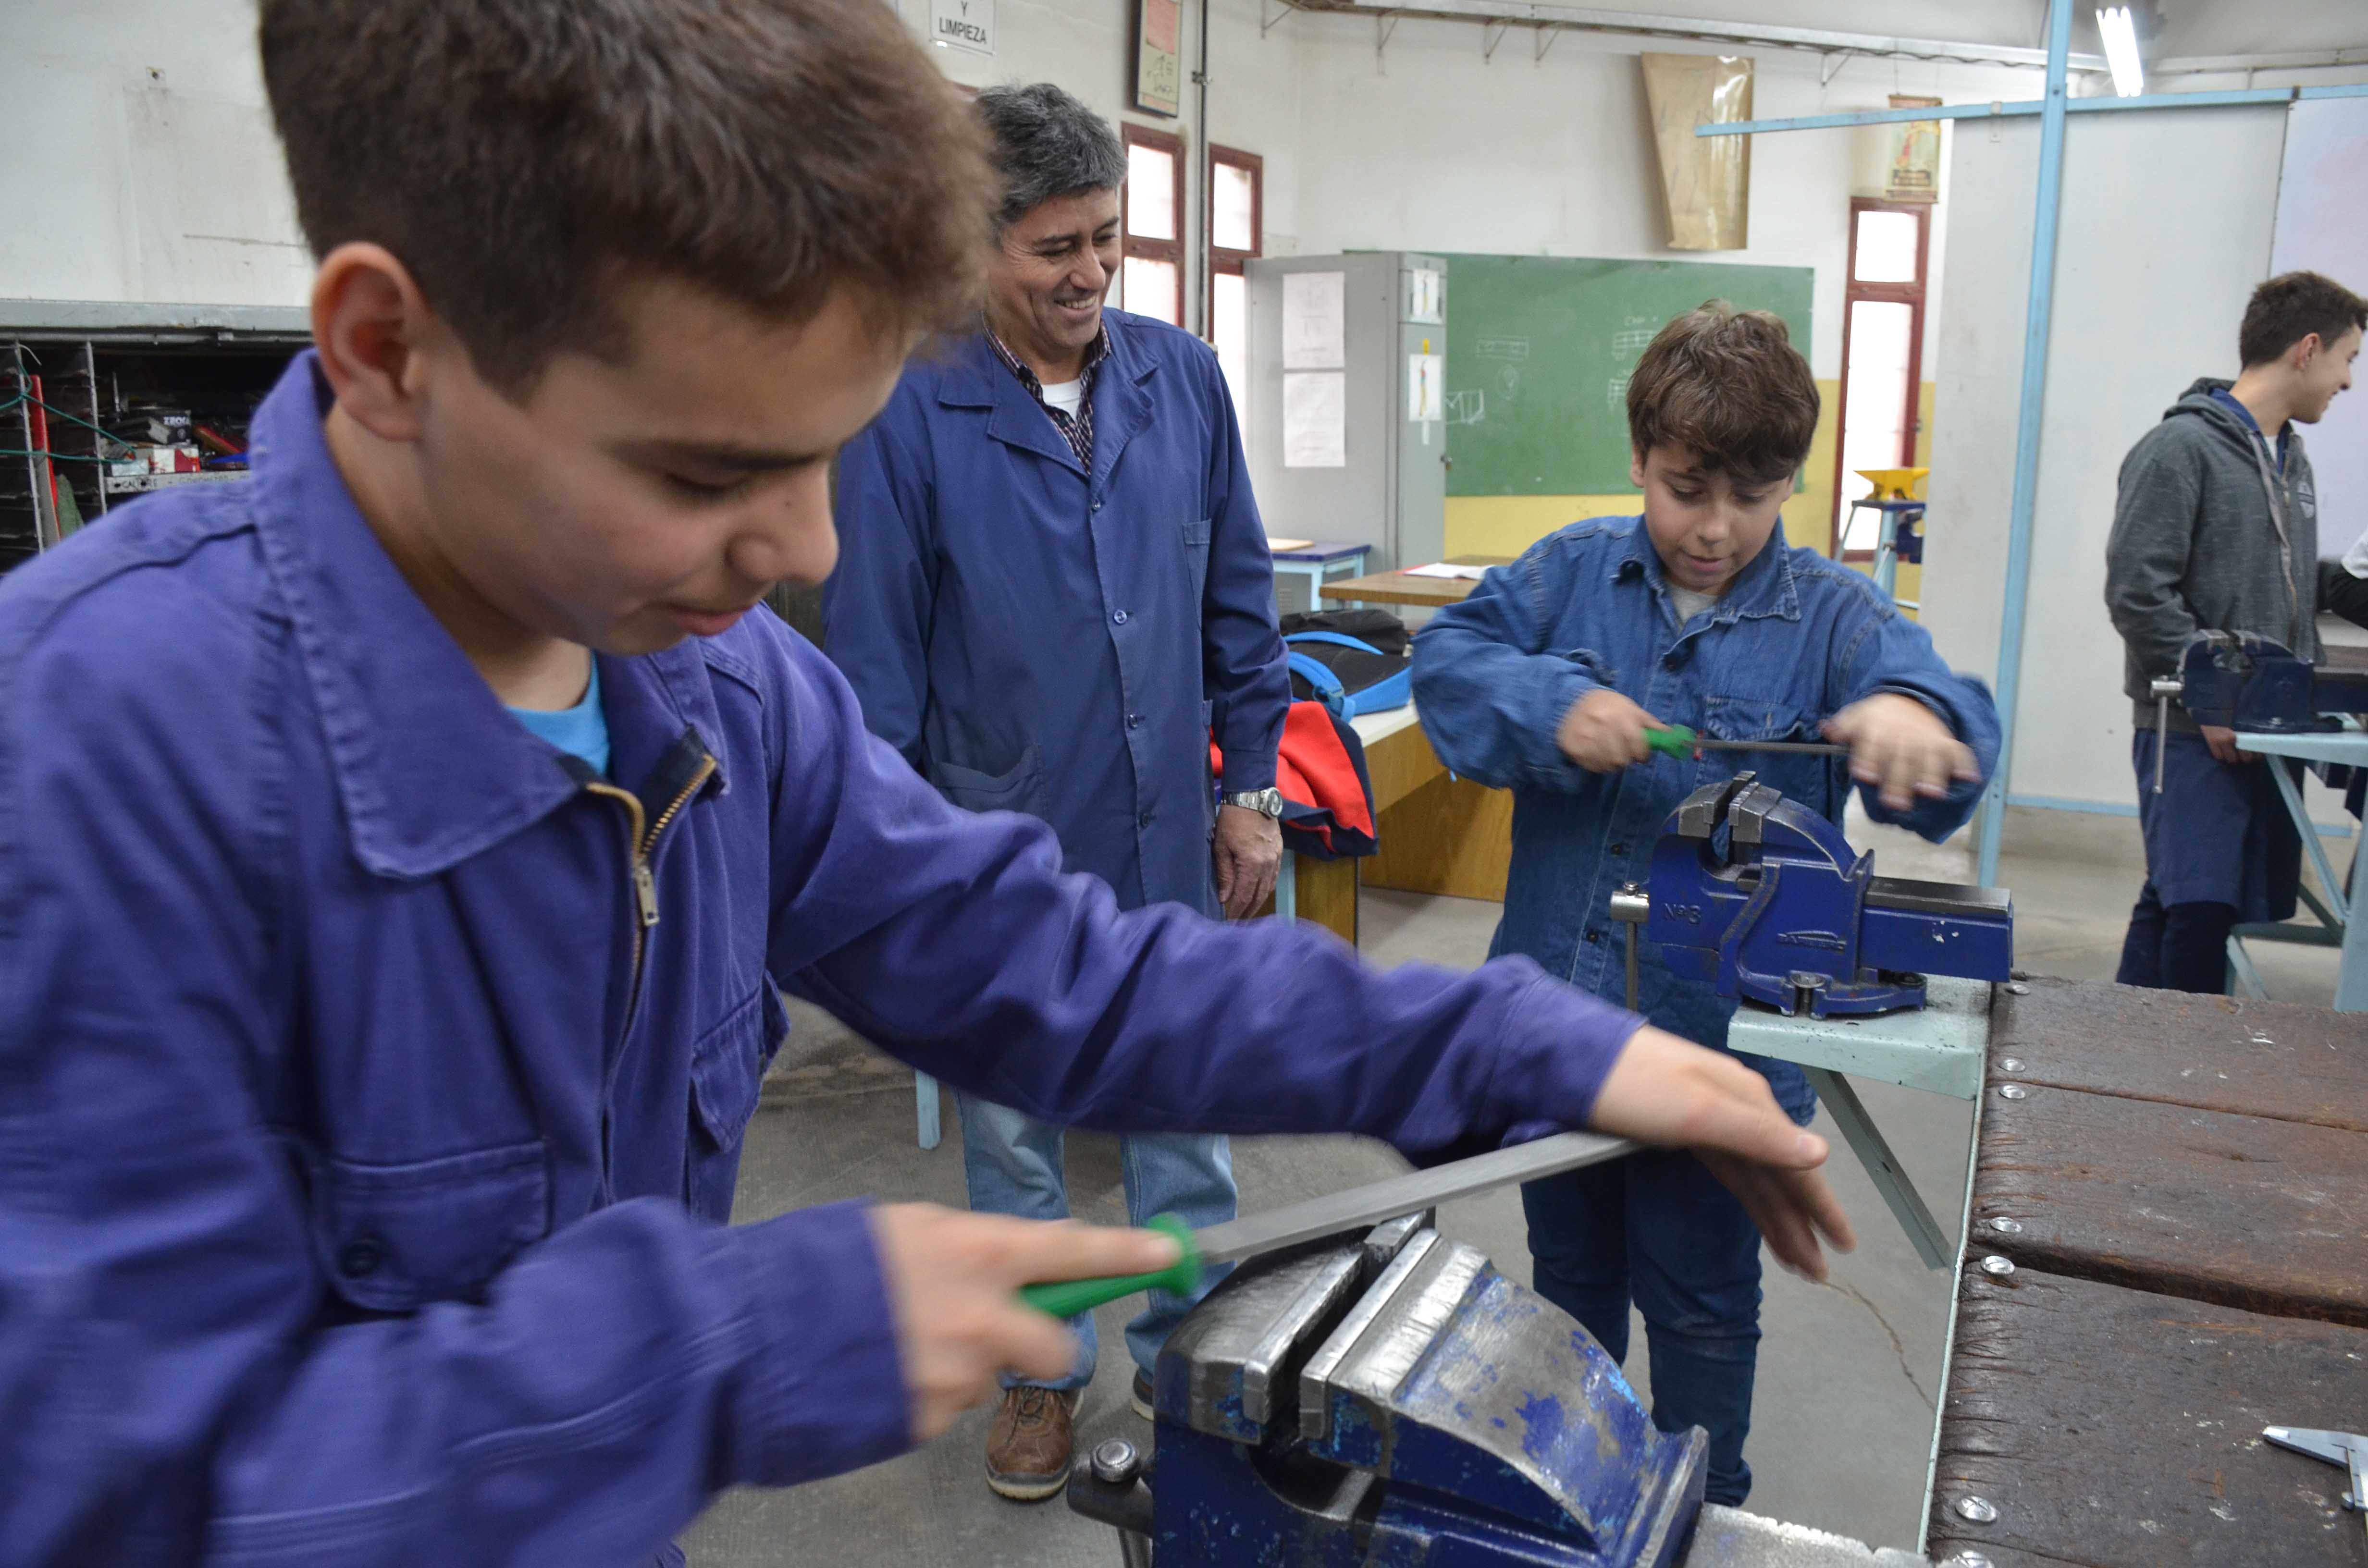 Los chicos preparan las piezas que usarán para construir una impresora braile. Foto: Yamil Regules.